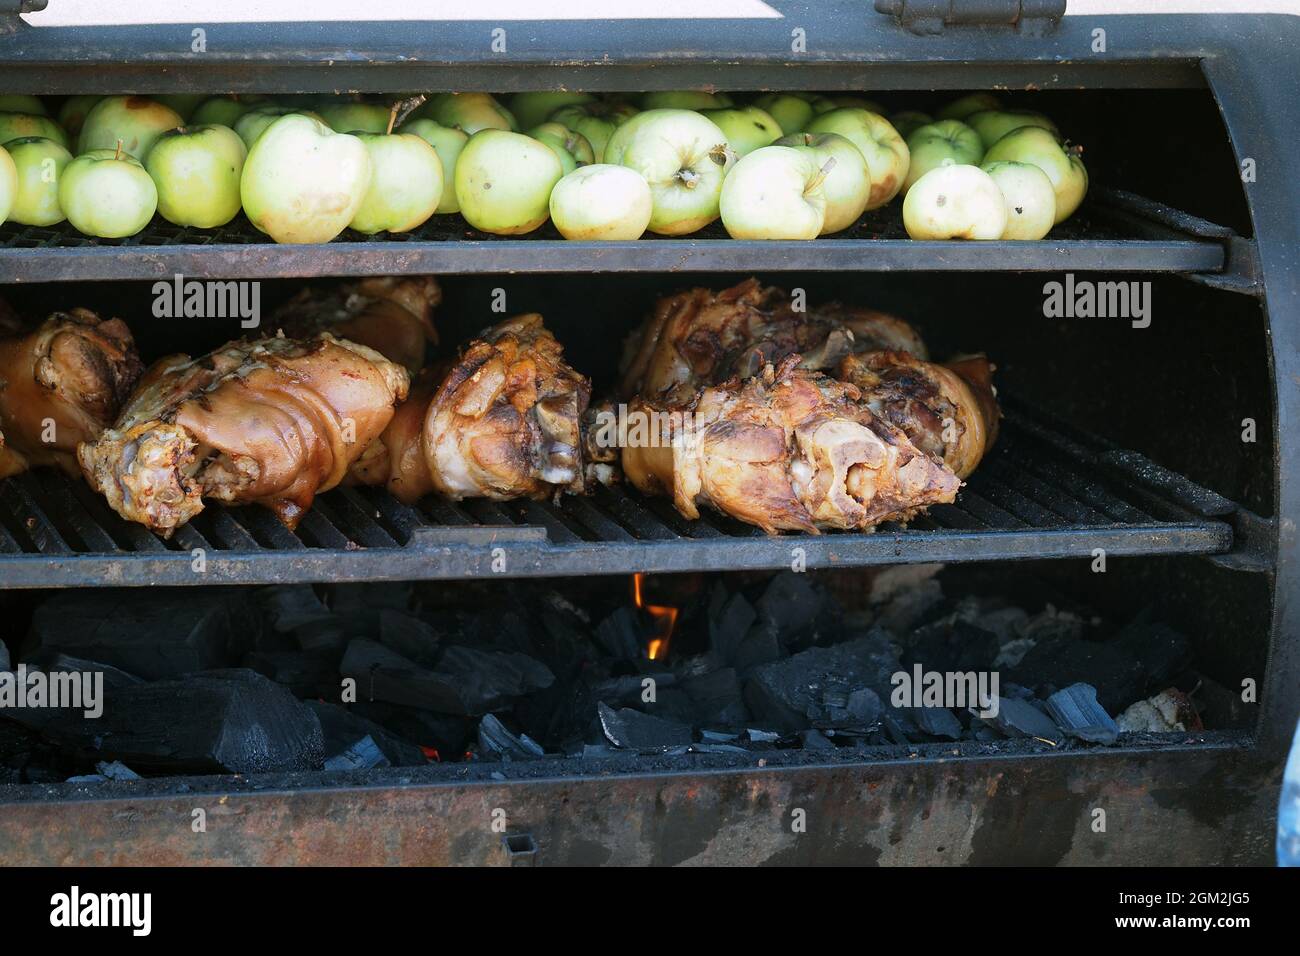 Griller des aliments. La viande est cuite au barbecue avec des coals. Porte-jarret de porc avec pommes sur le barbecue. Photo de haute qualité Banque D'Images